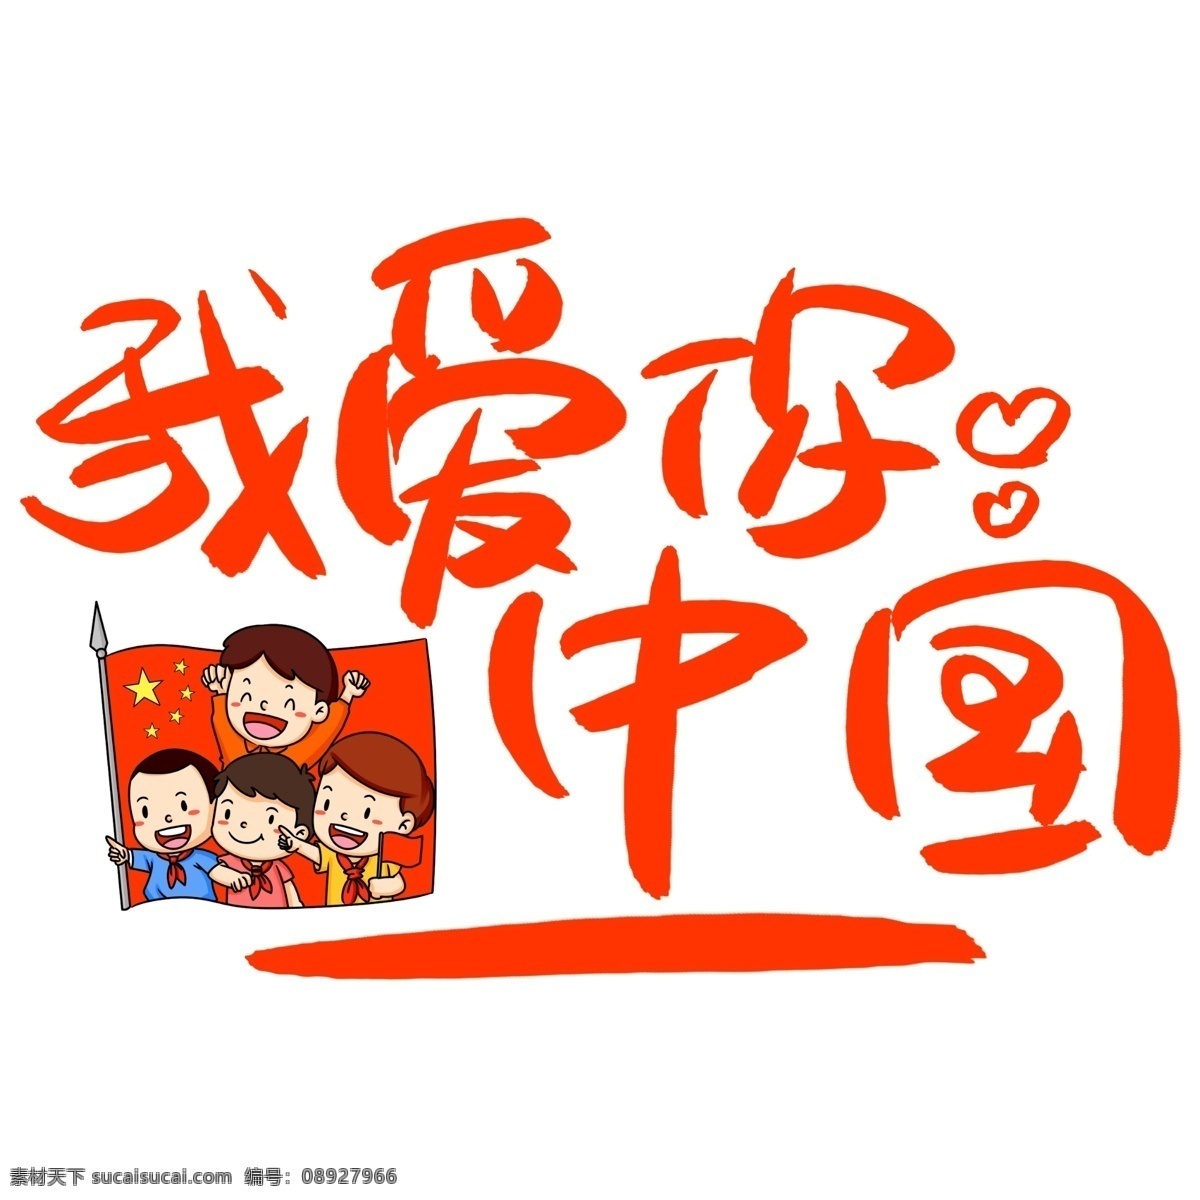 我爱你 中国 手写 手绘 书法艺术 字 国庆节 国旗 national day celebrate